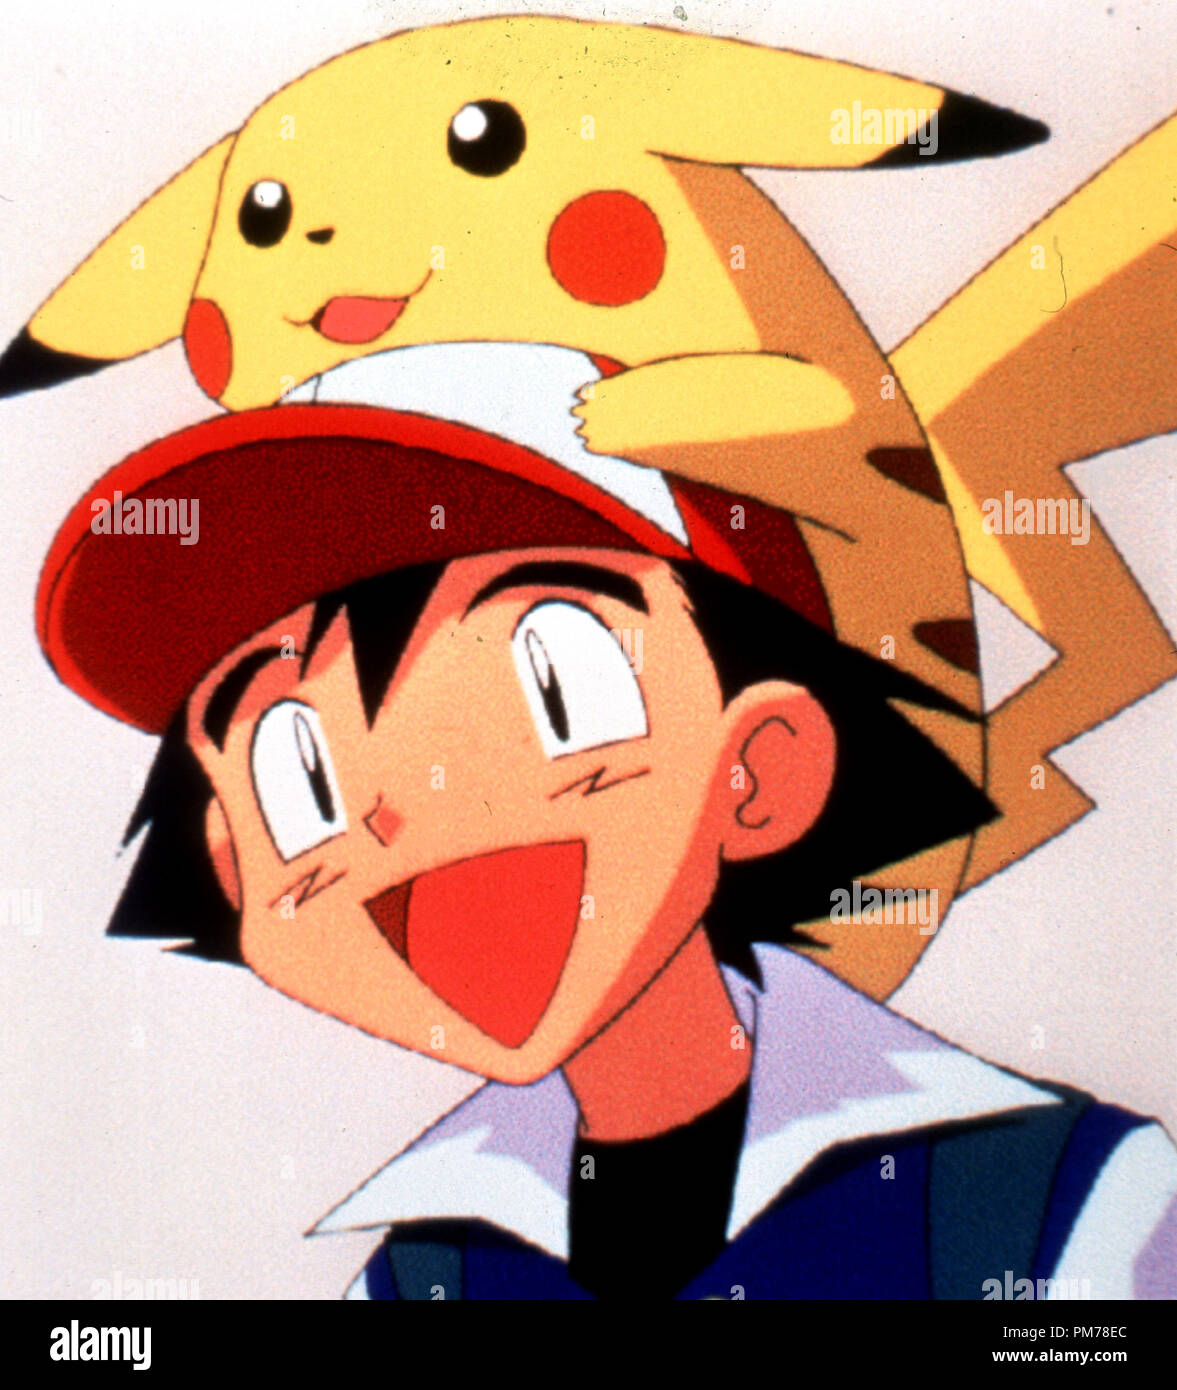 Photo du film de 'Pokemon' Ash, Pikachu © 1998 Warner Bros. Référence #  30996313THA pour un usage éditorial uniquement - Tous droits réservés Banque D'Images